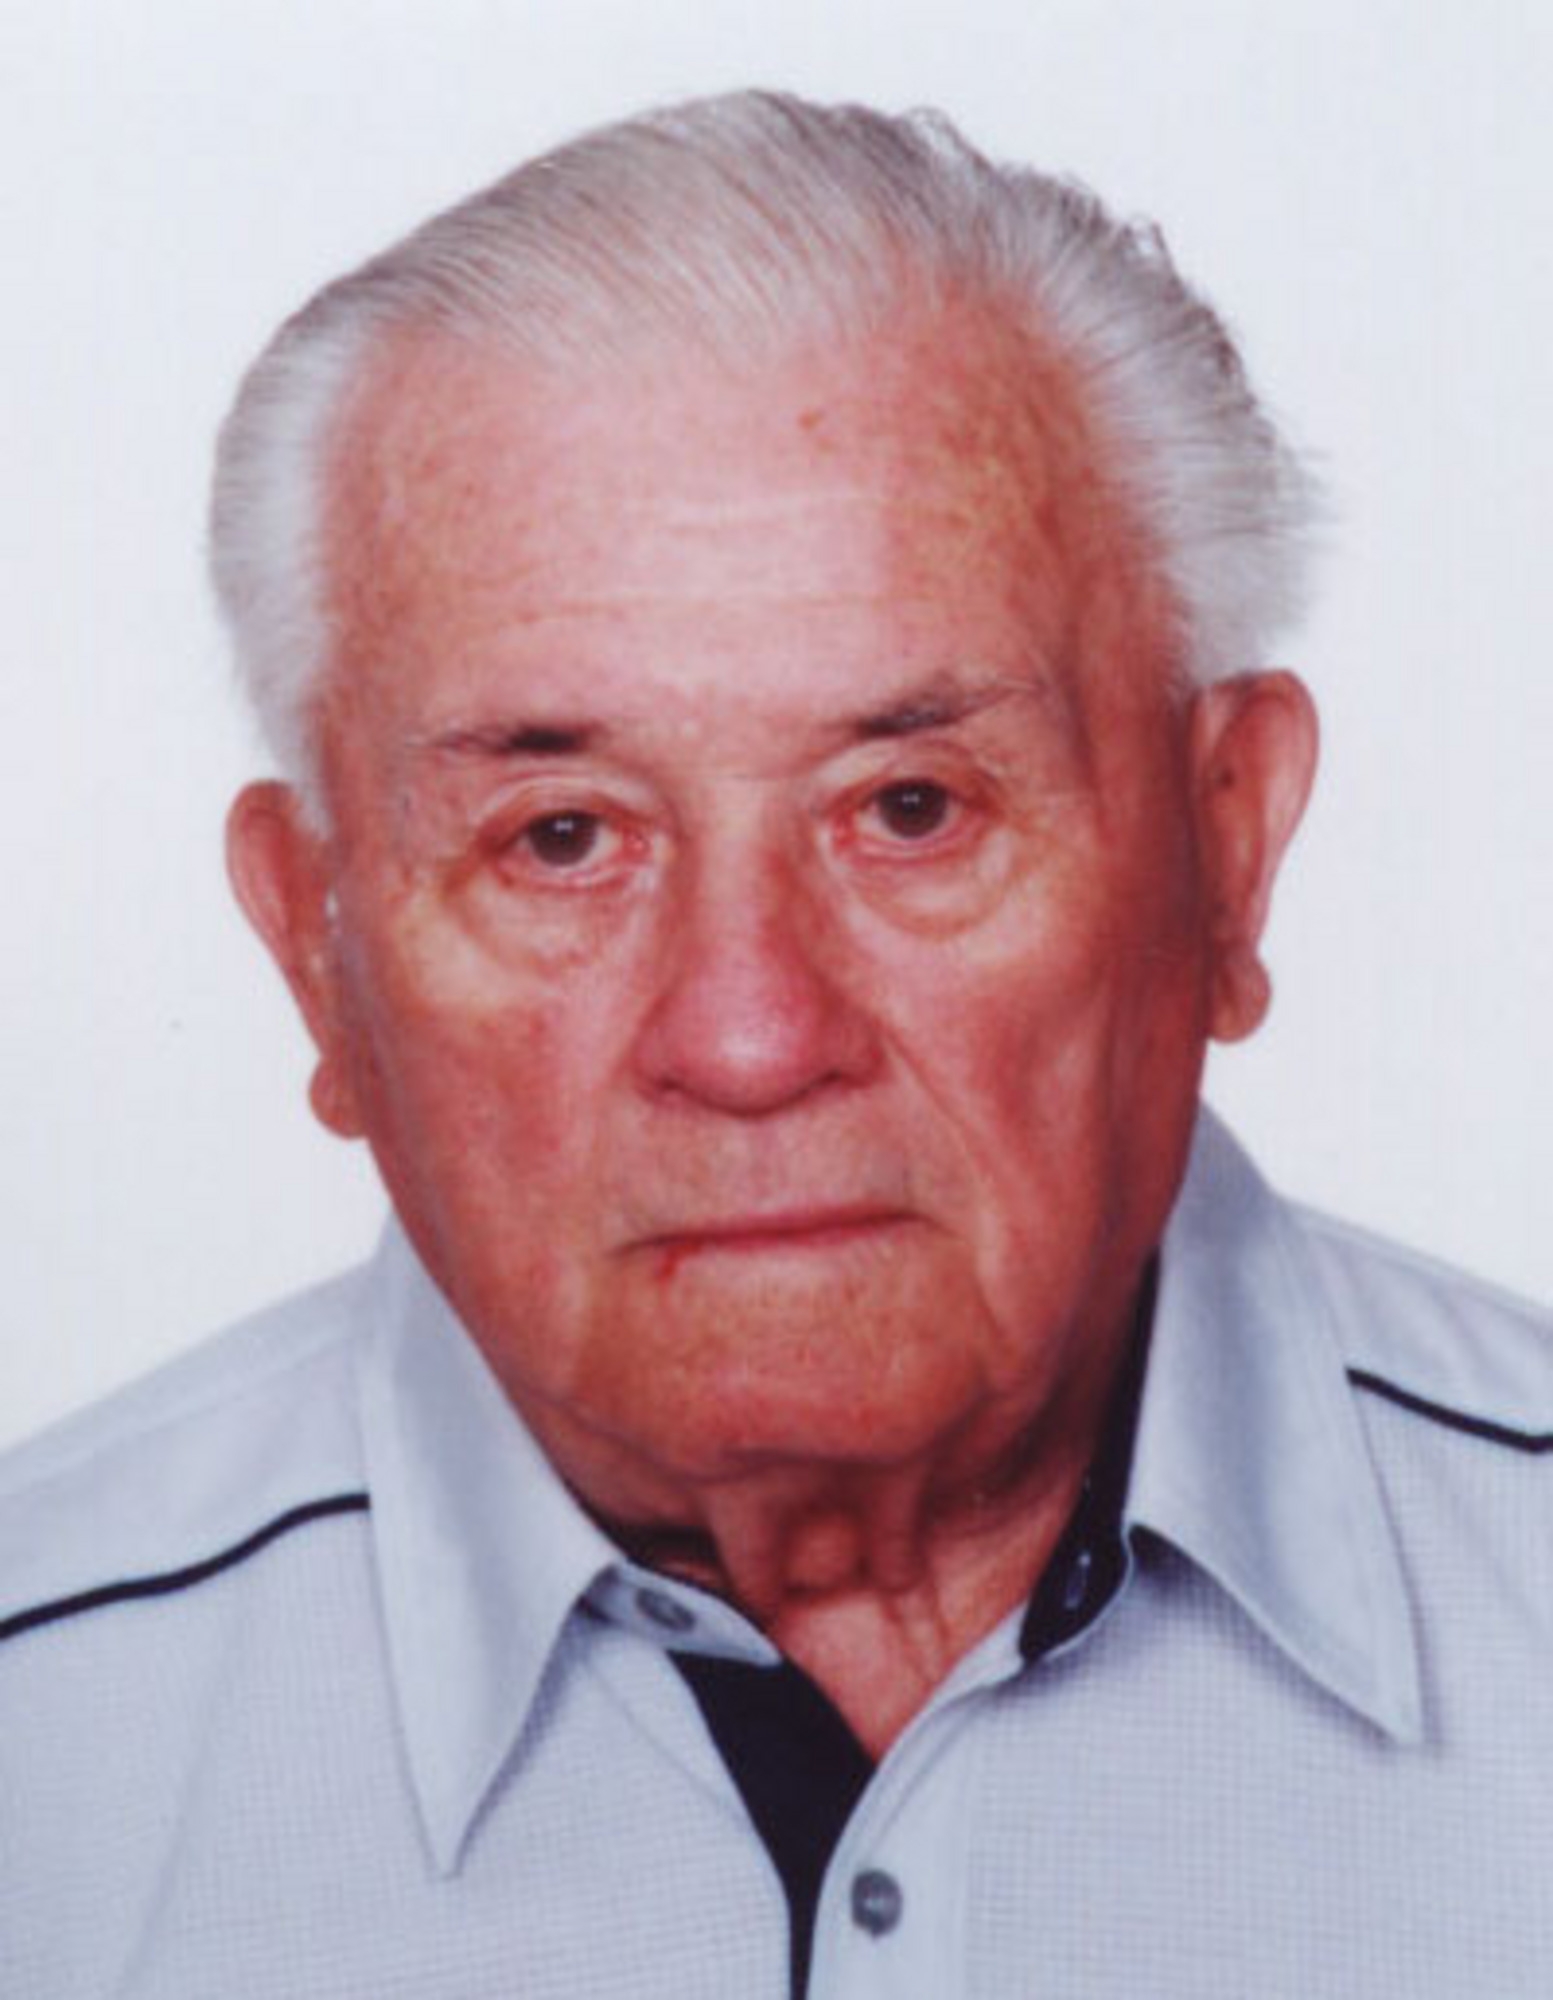 Jan Dorúšek